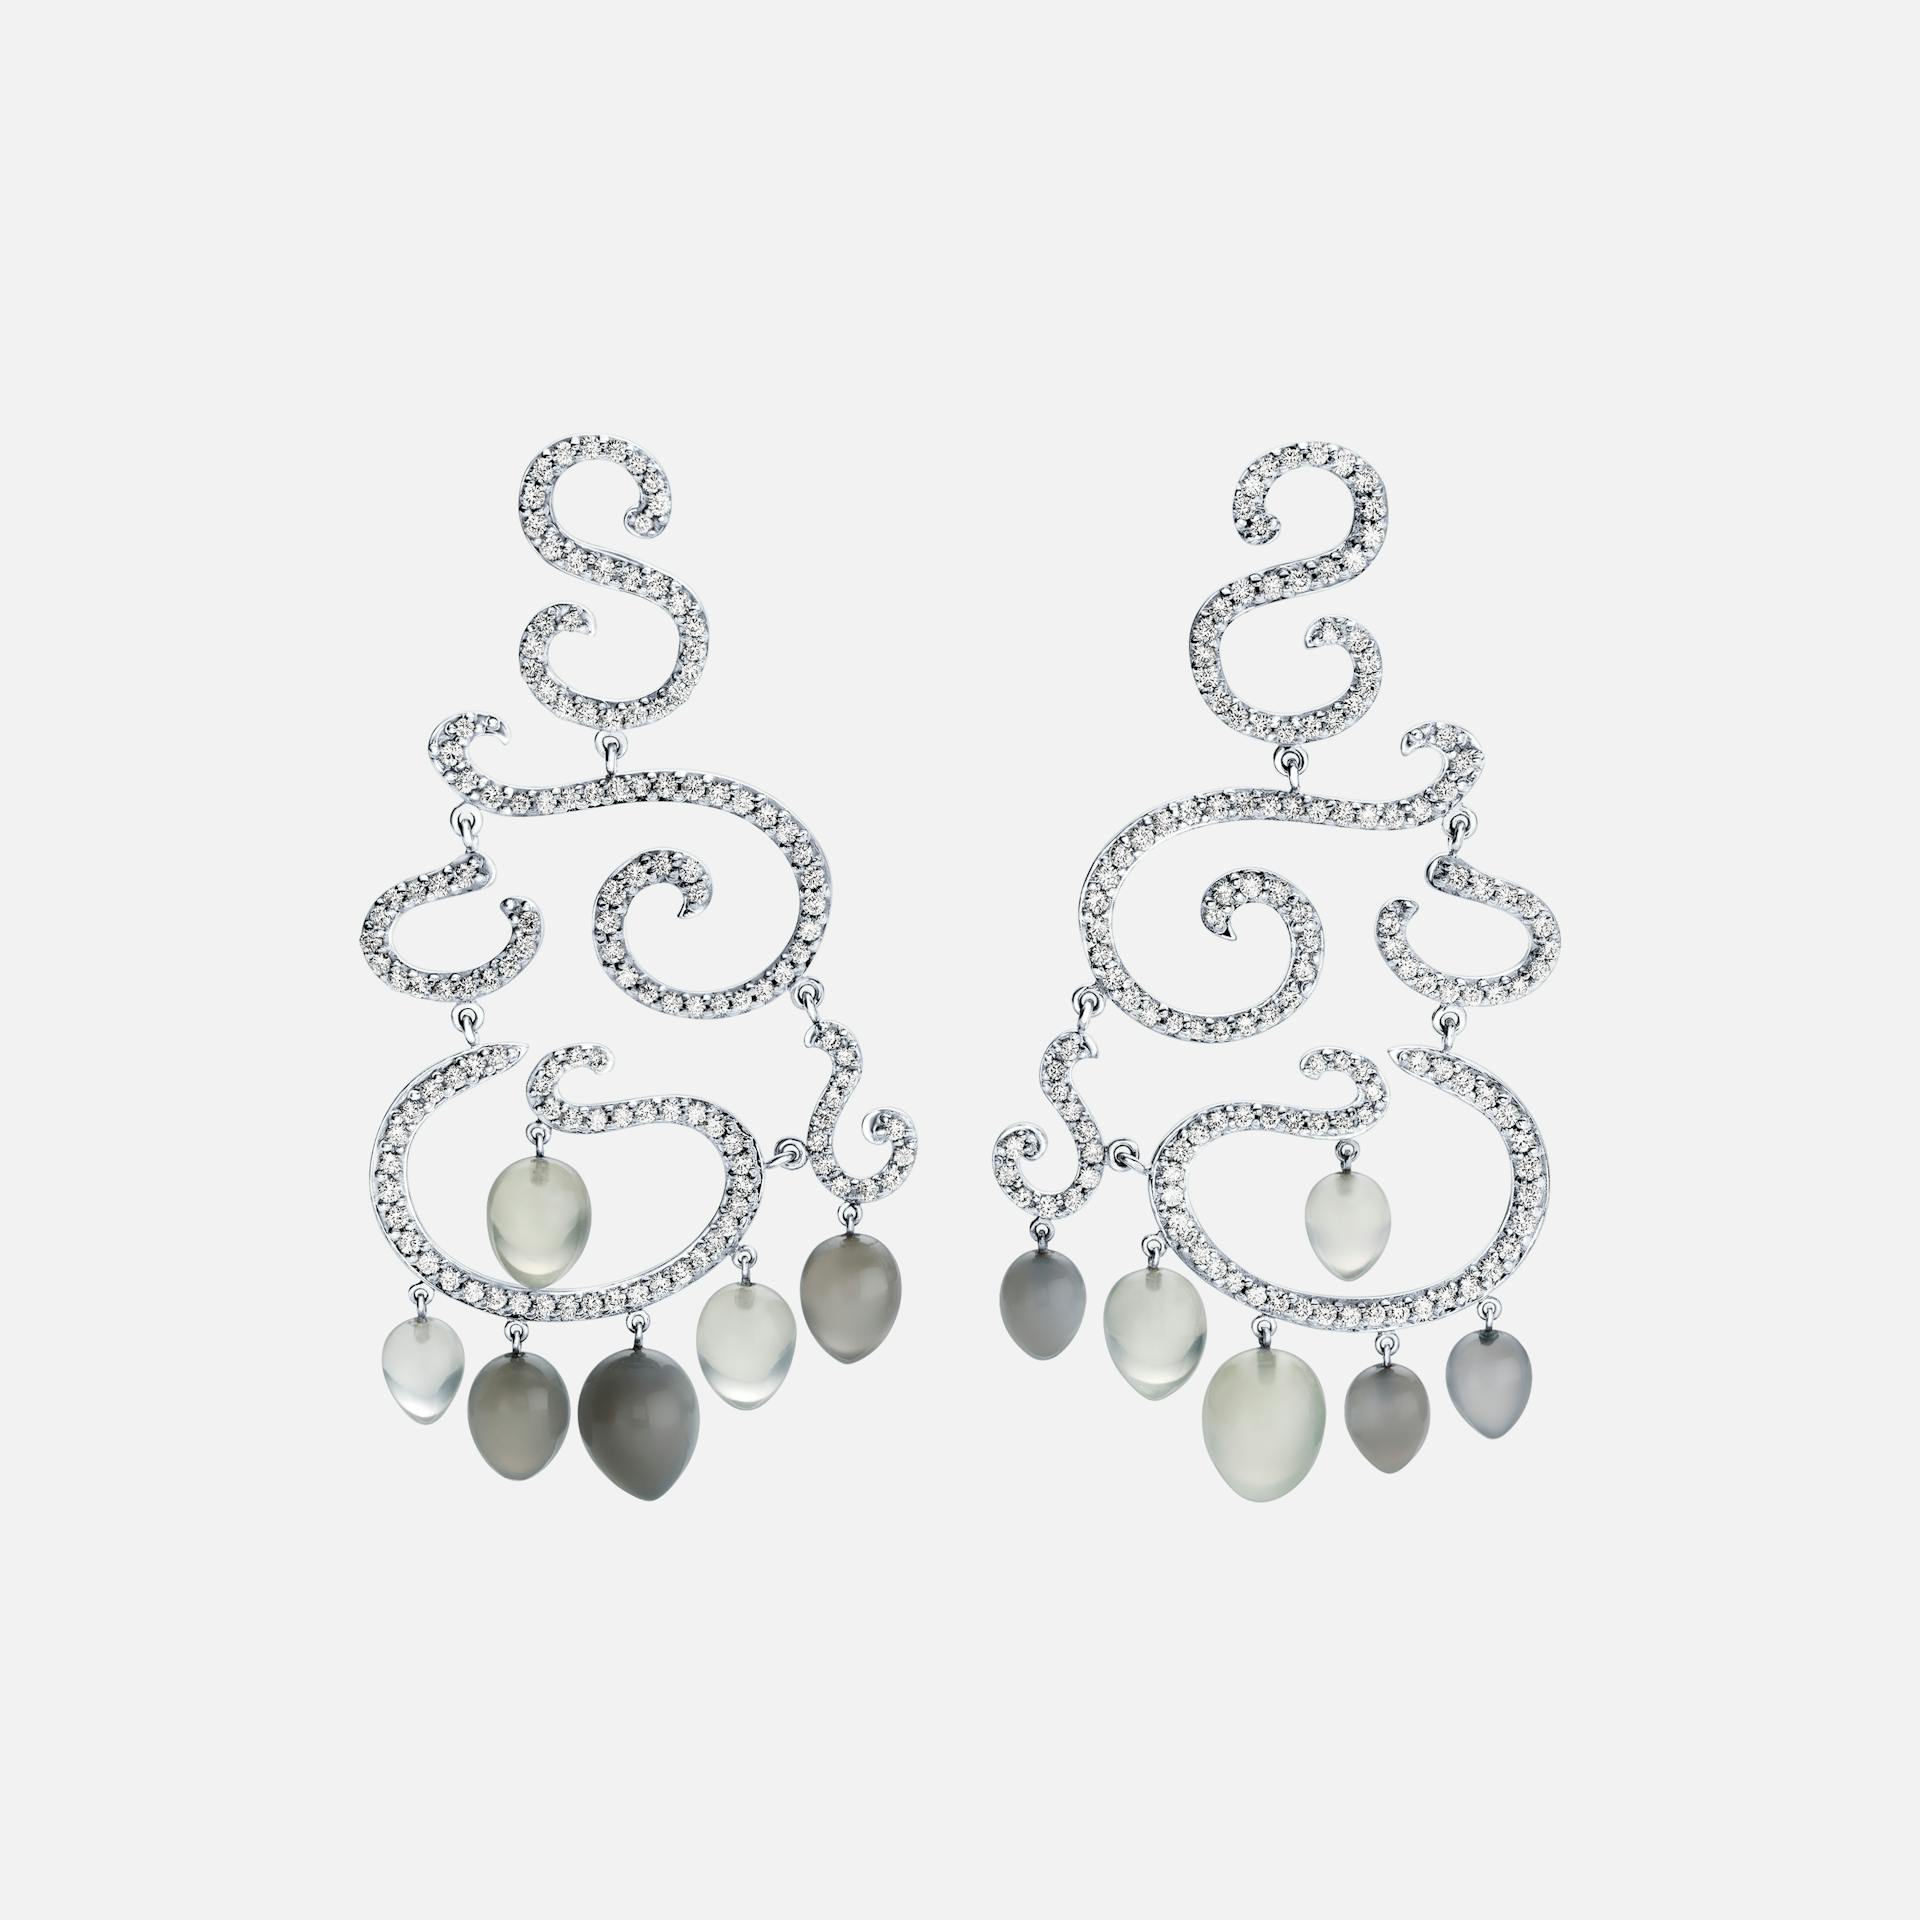 Chandelier Earrings in White Gold with Diamonds & Moonstone Drops  |  Ole Lynggaard Copenhagen 